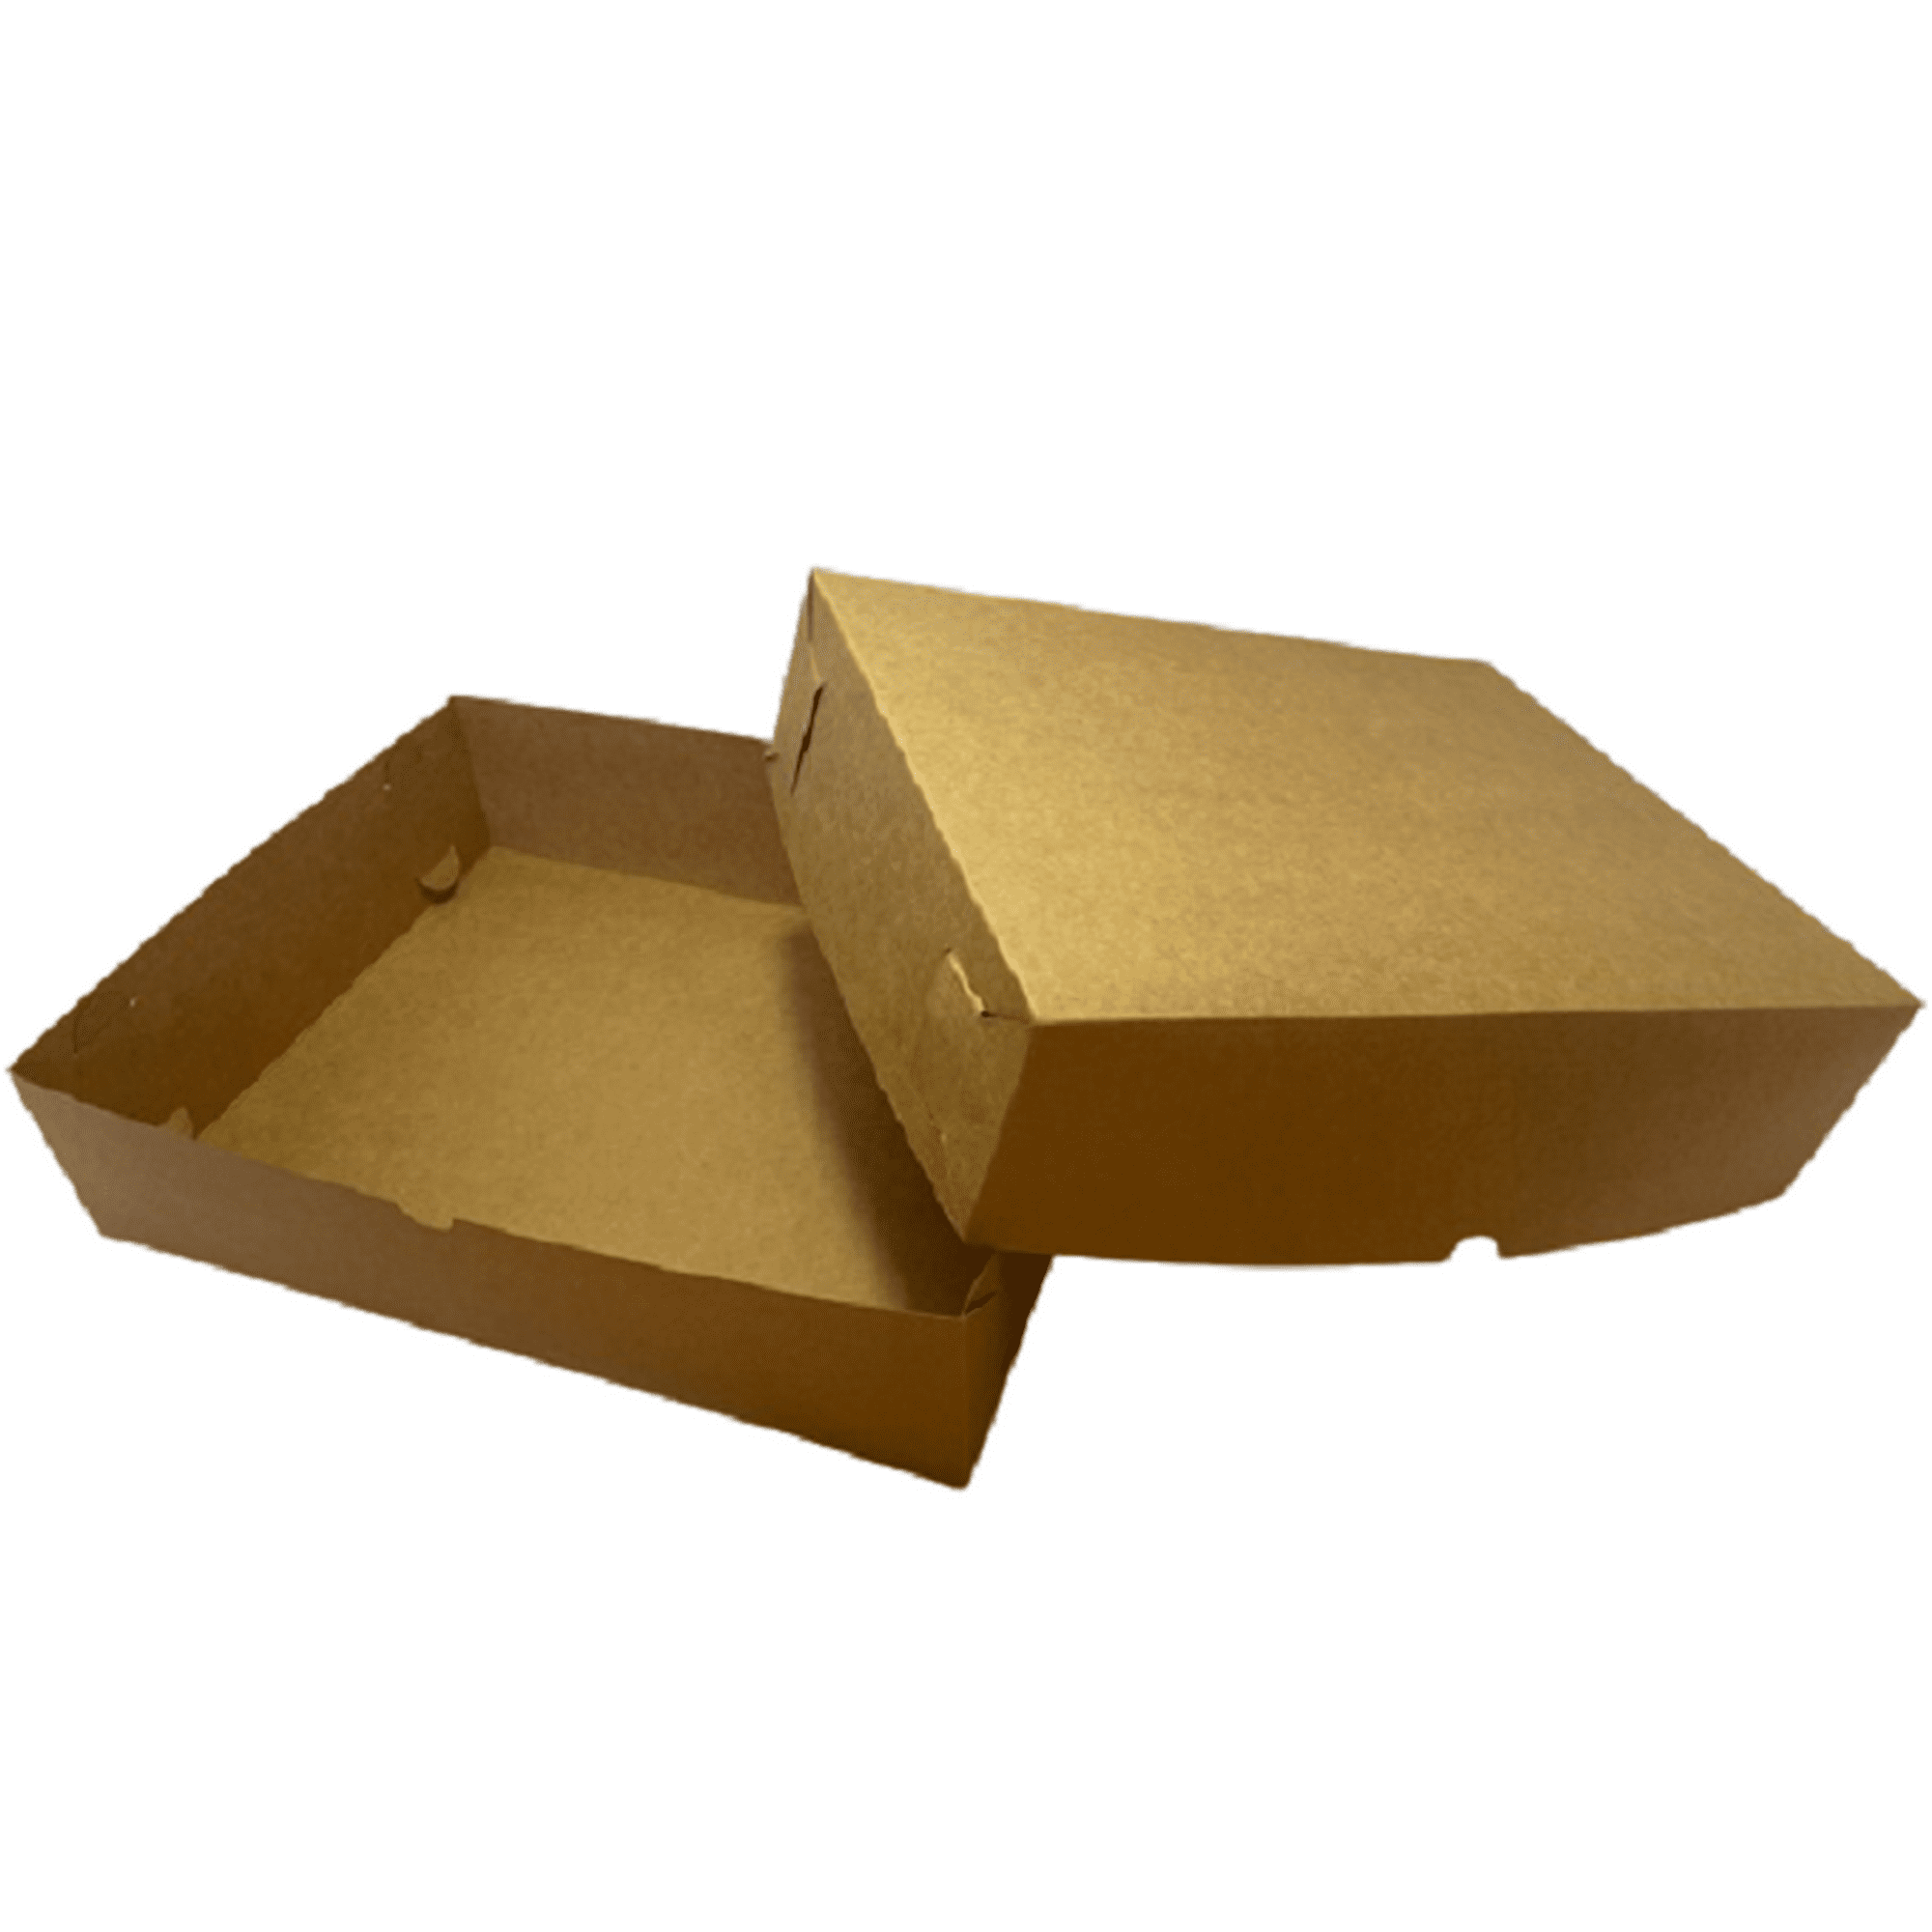 Caja tipo libro, disponible - Cajas de cartón con estilo